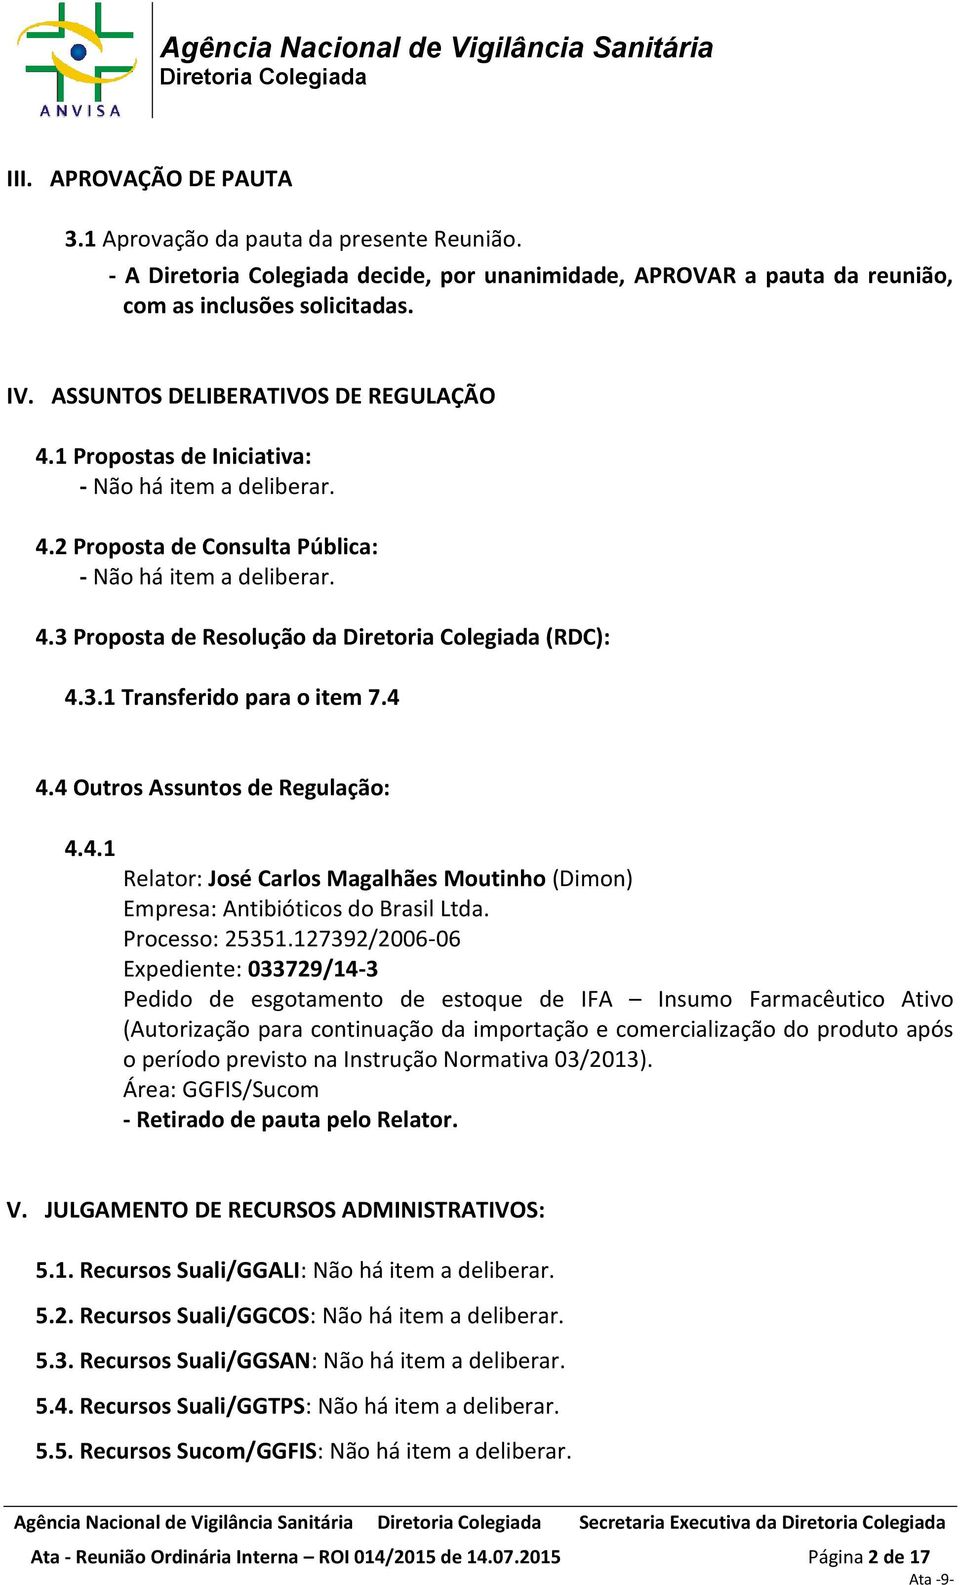 4 Outros Assuntos de Regulação: 4.4.1 Empresa: Antibióticos do Brasil Ltda. Processo: 25351.